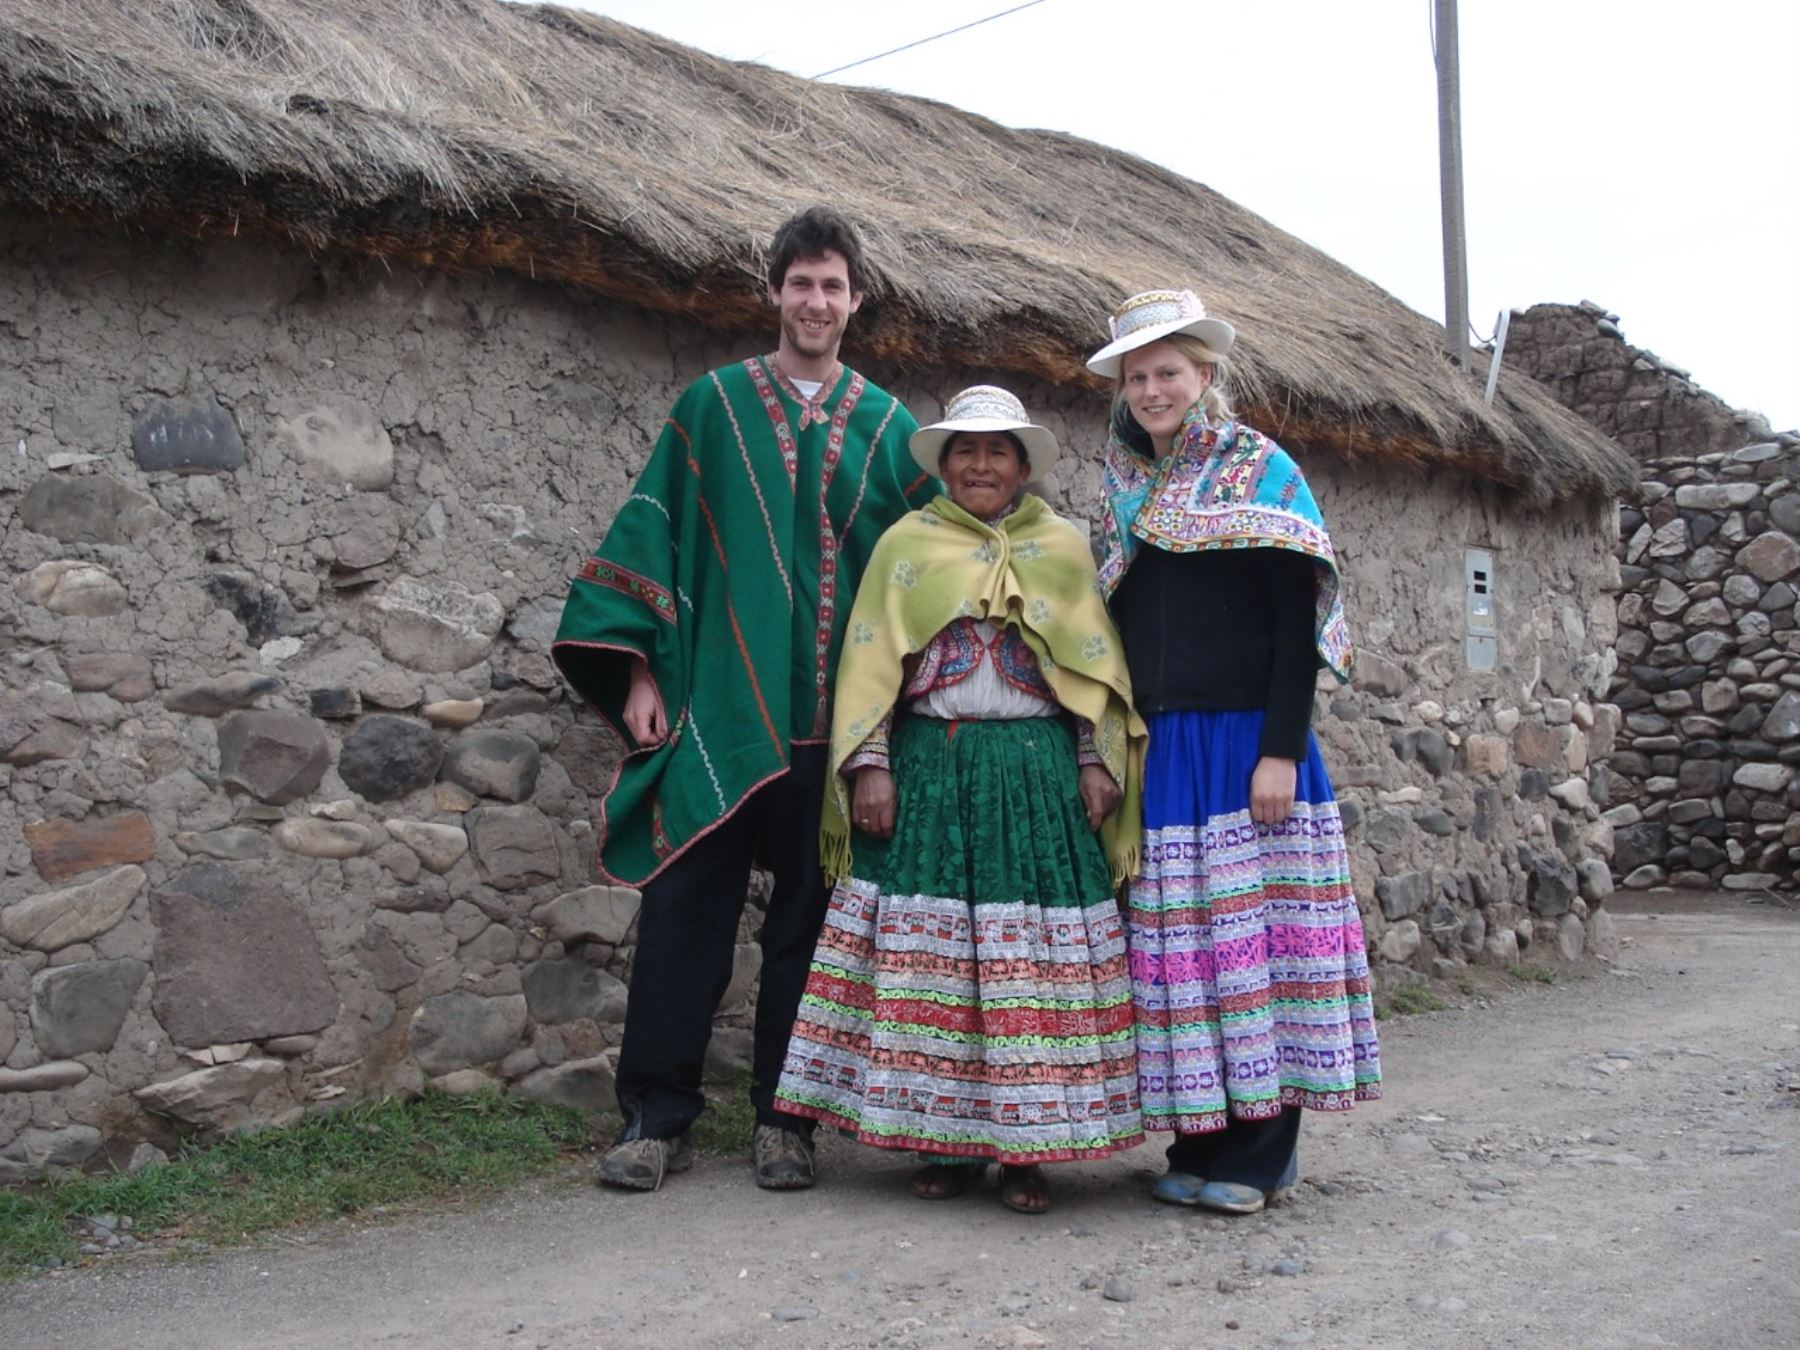 Perú es un destino ideal para el turismo comunitario gracias a su enorme riqueza pluricultural, expresada tradiciones y costumbres de raíces ancestrales y enriquecidas con el mestizaje cultural que son preservadas y compartidas por poblaciones muy hospitalarias con los turistas nacionales y extranjeros. ANDINA/Difusión